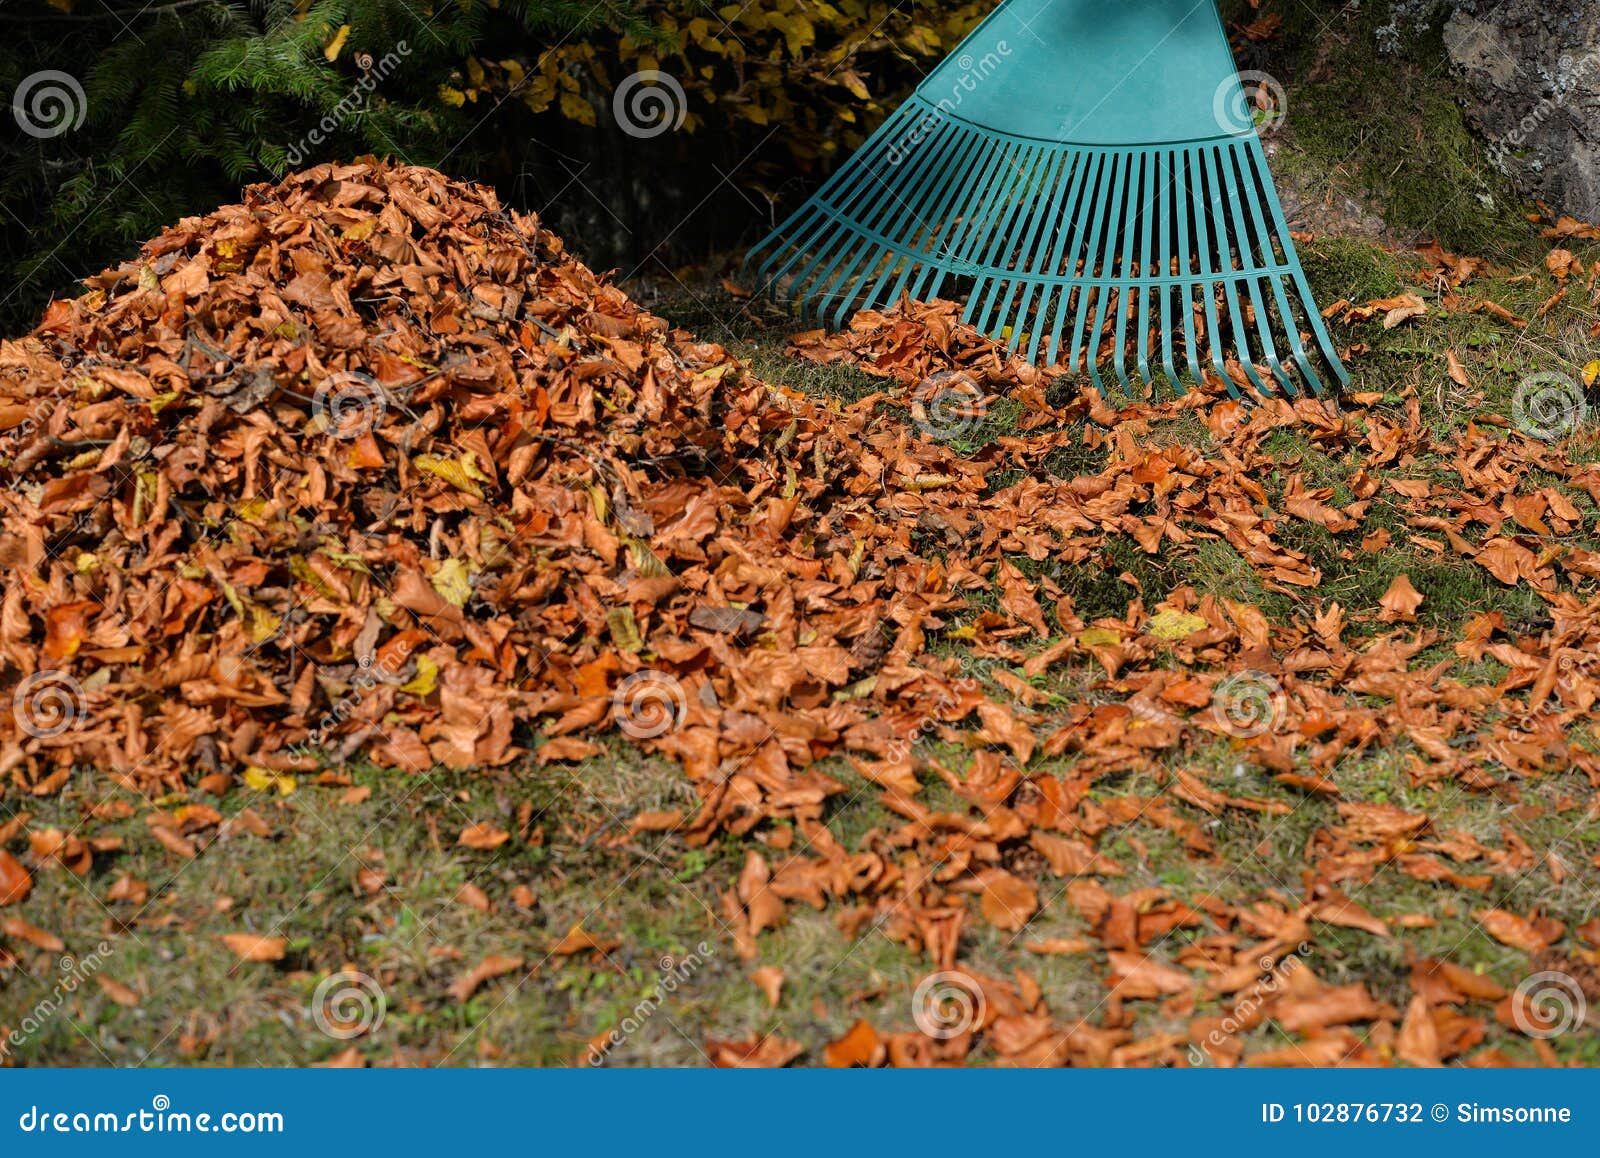 Removing Foliage Autumn Leaves Stock Photo - Image of pile, maintenance ...